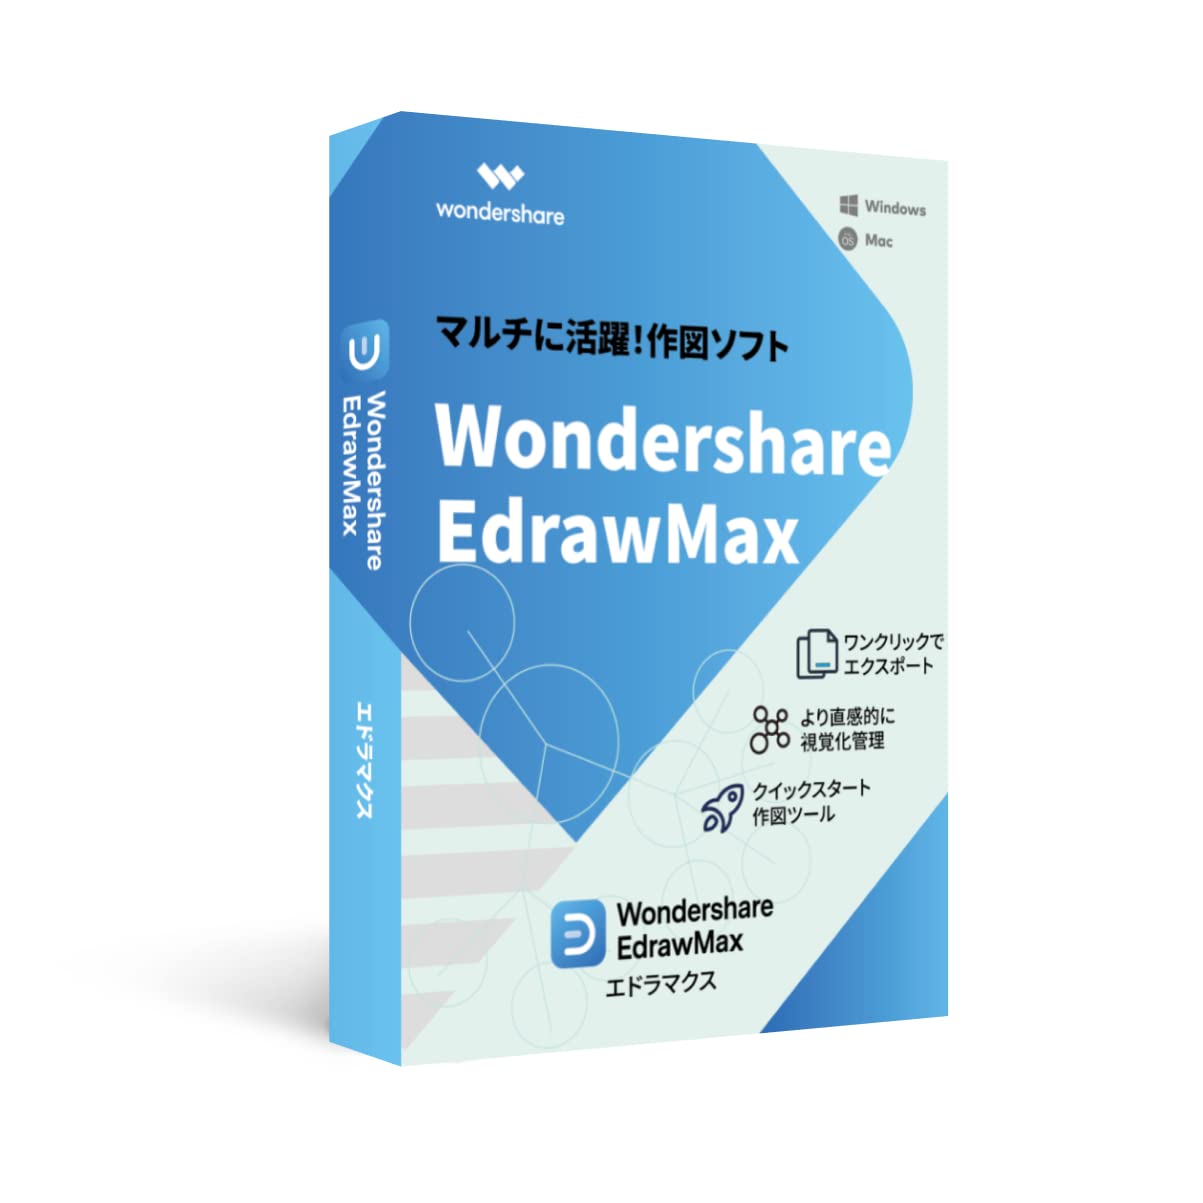 Wondershare EdrawMax（エドラマックス） 永続ライセンス クイックスタート作図ツールに最適Windows/Mac/Linux対応DVDパッケージ版　ワンダーシェアー